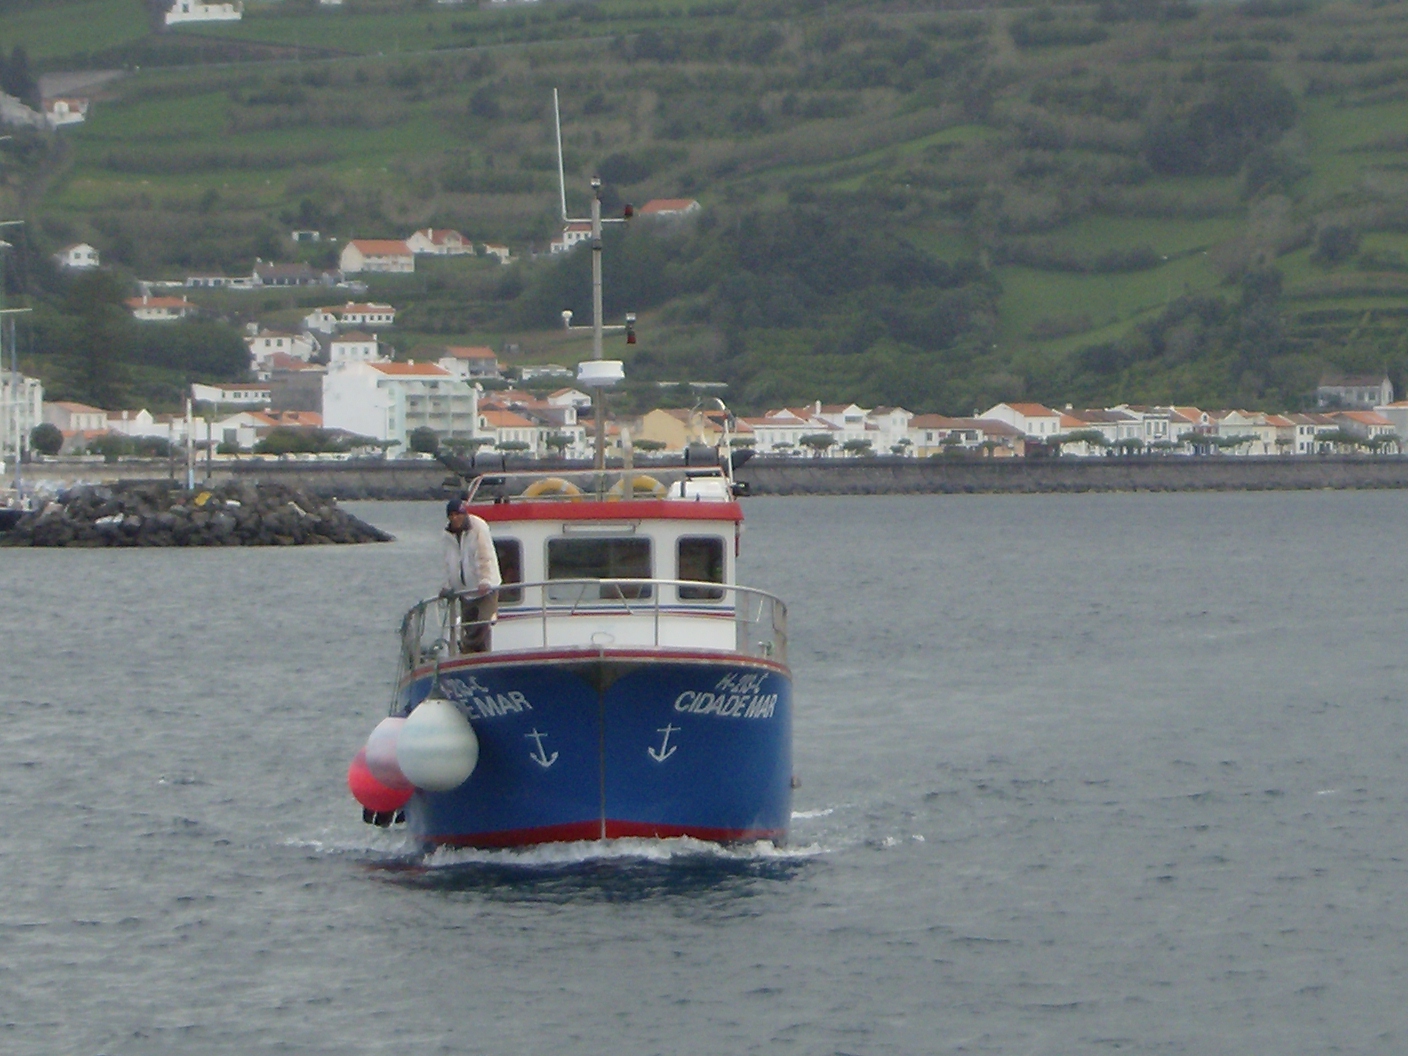 APEDA contesta denúncia de Pesca Ilegal à volta da Ilha de São Jorge